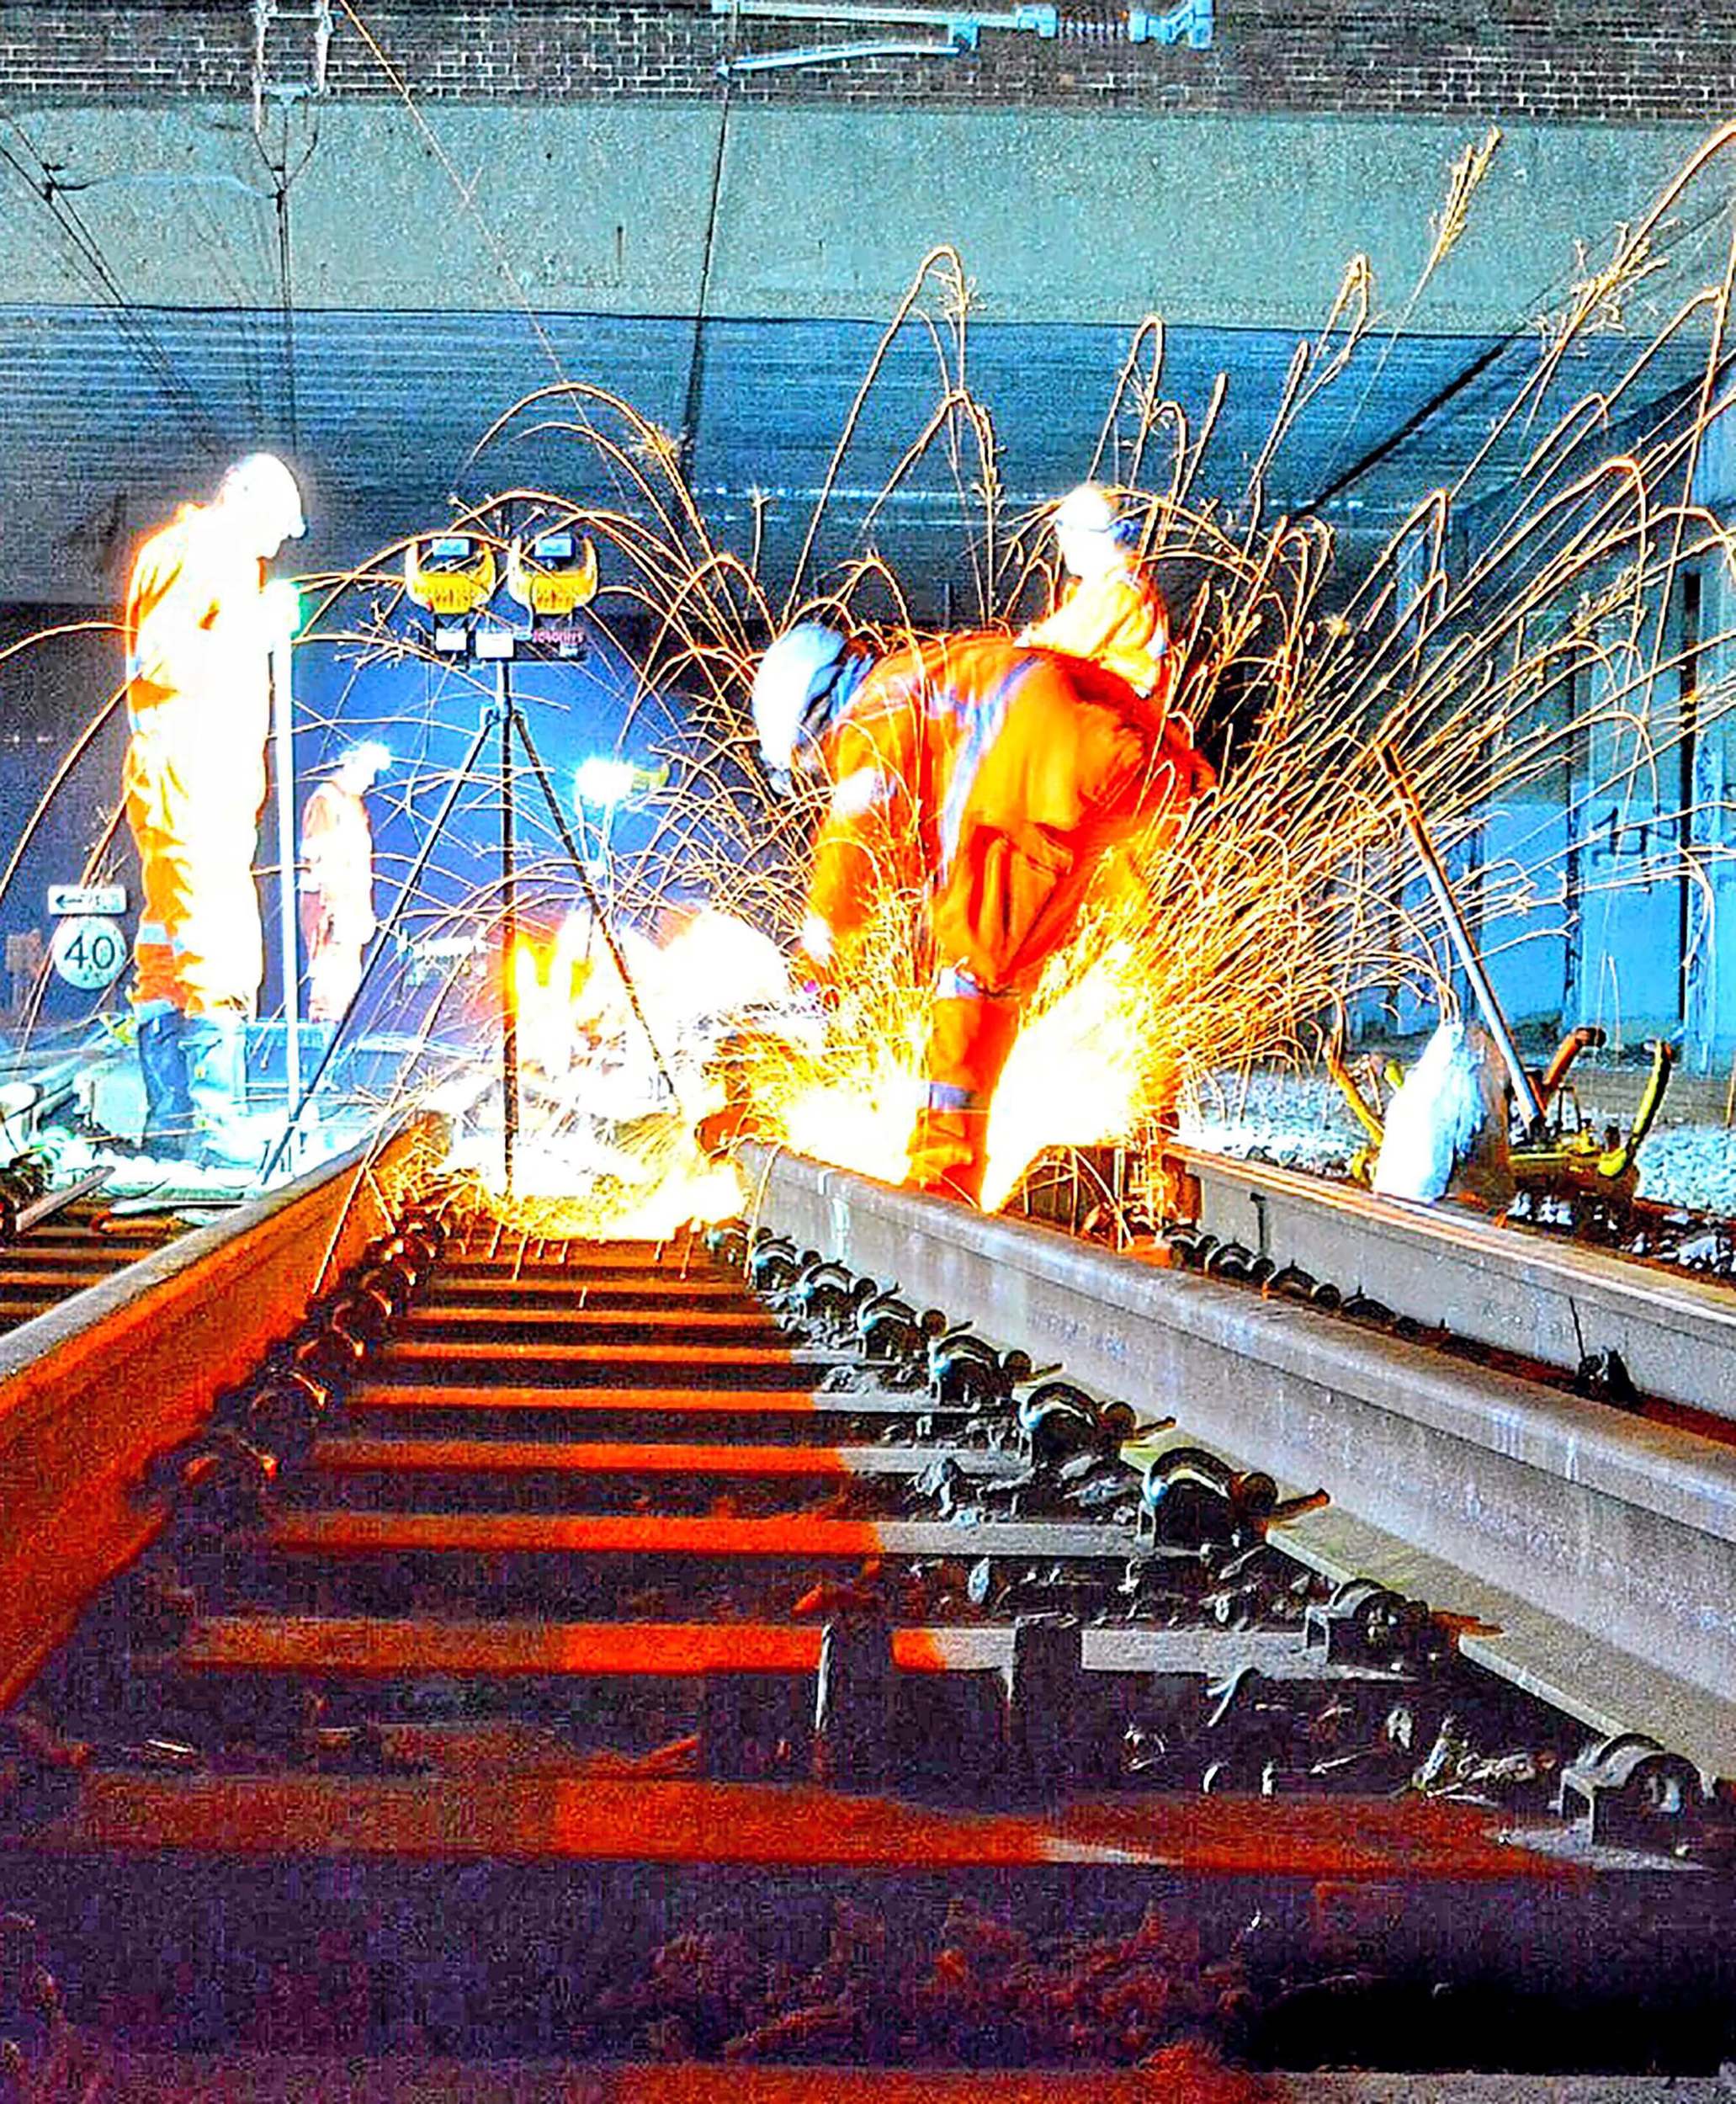 Workers’ repairing a railway line. NETWORK RAIL.